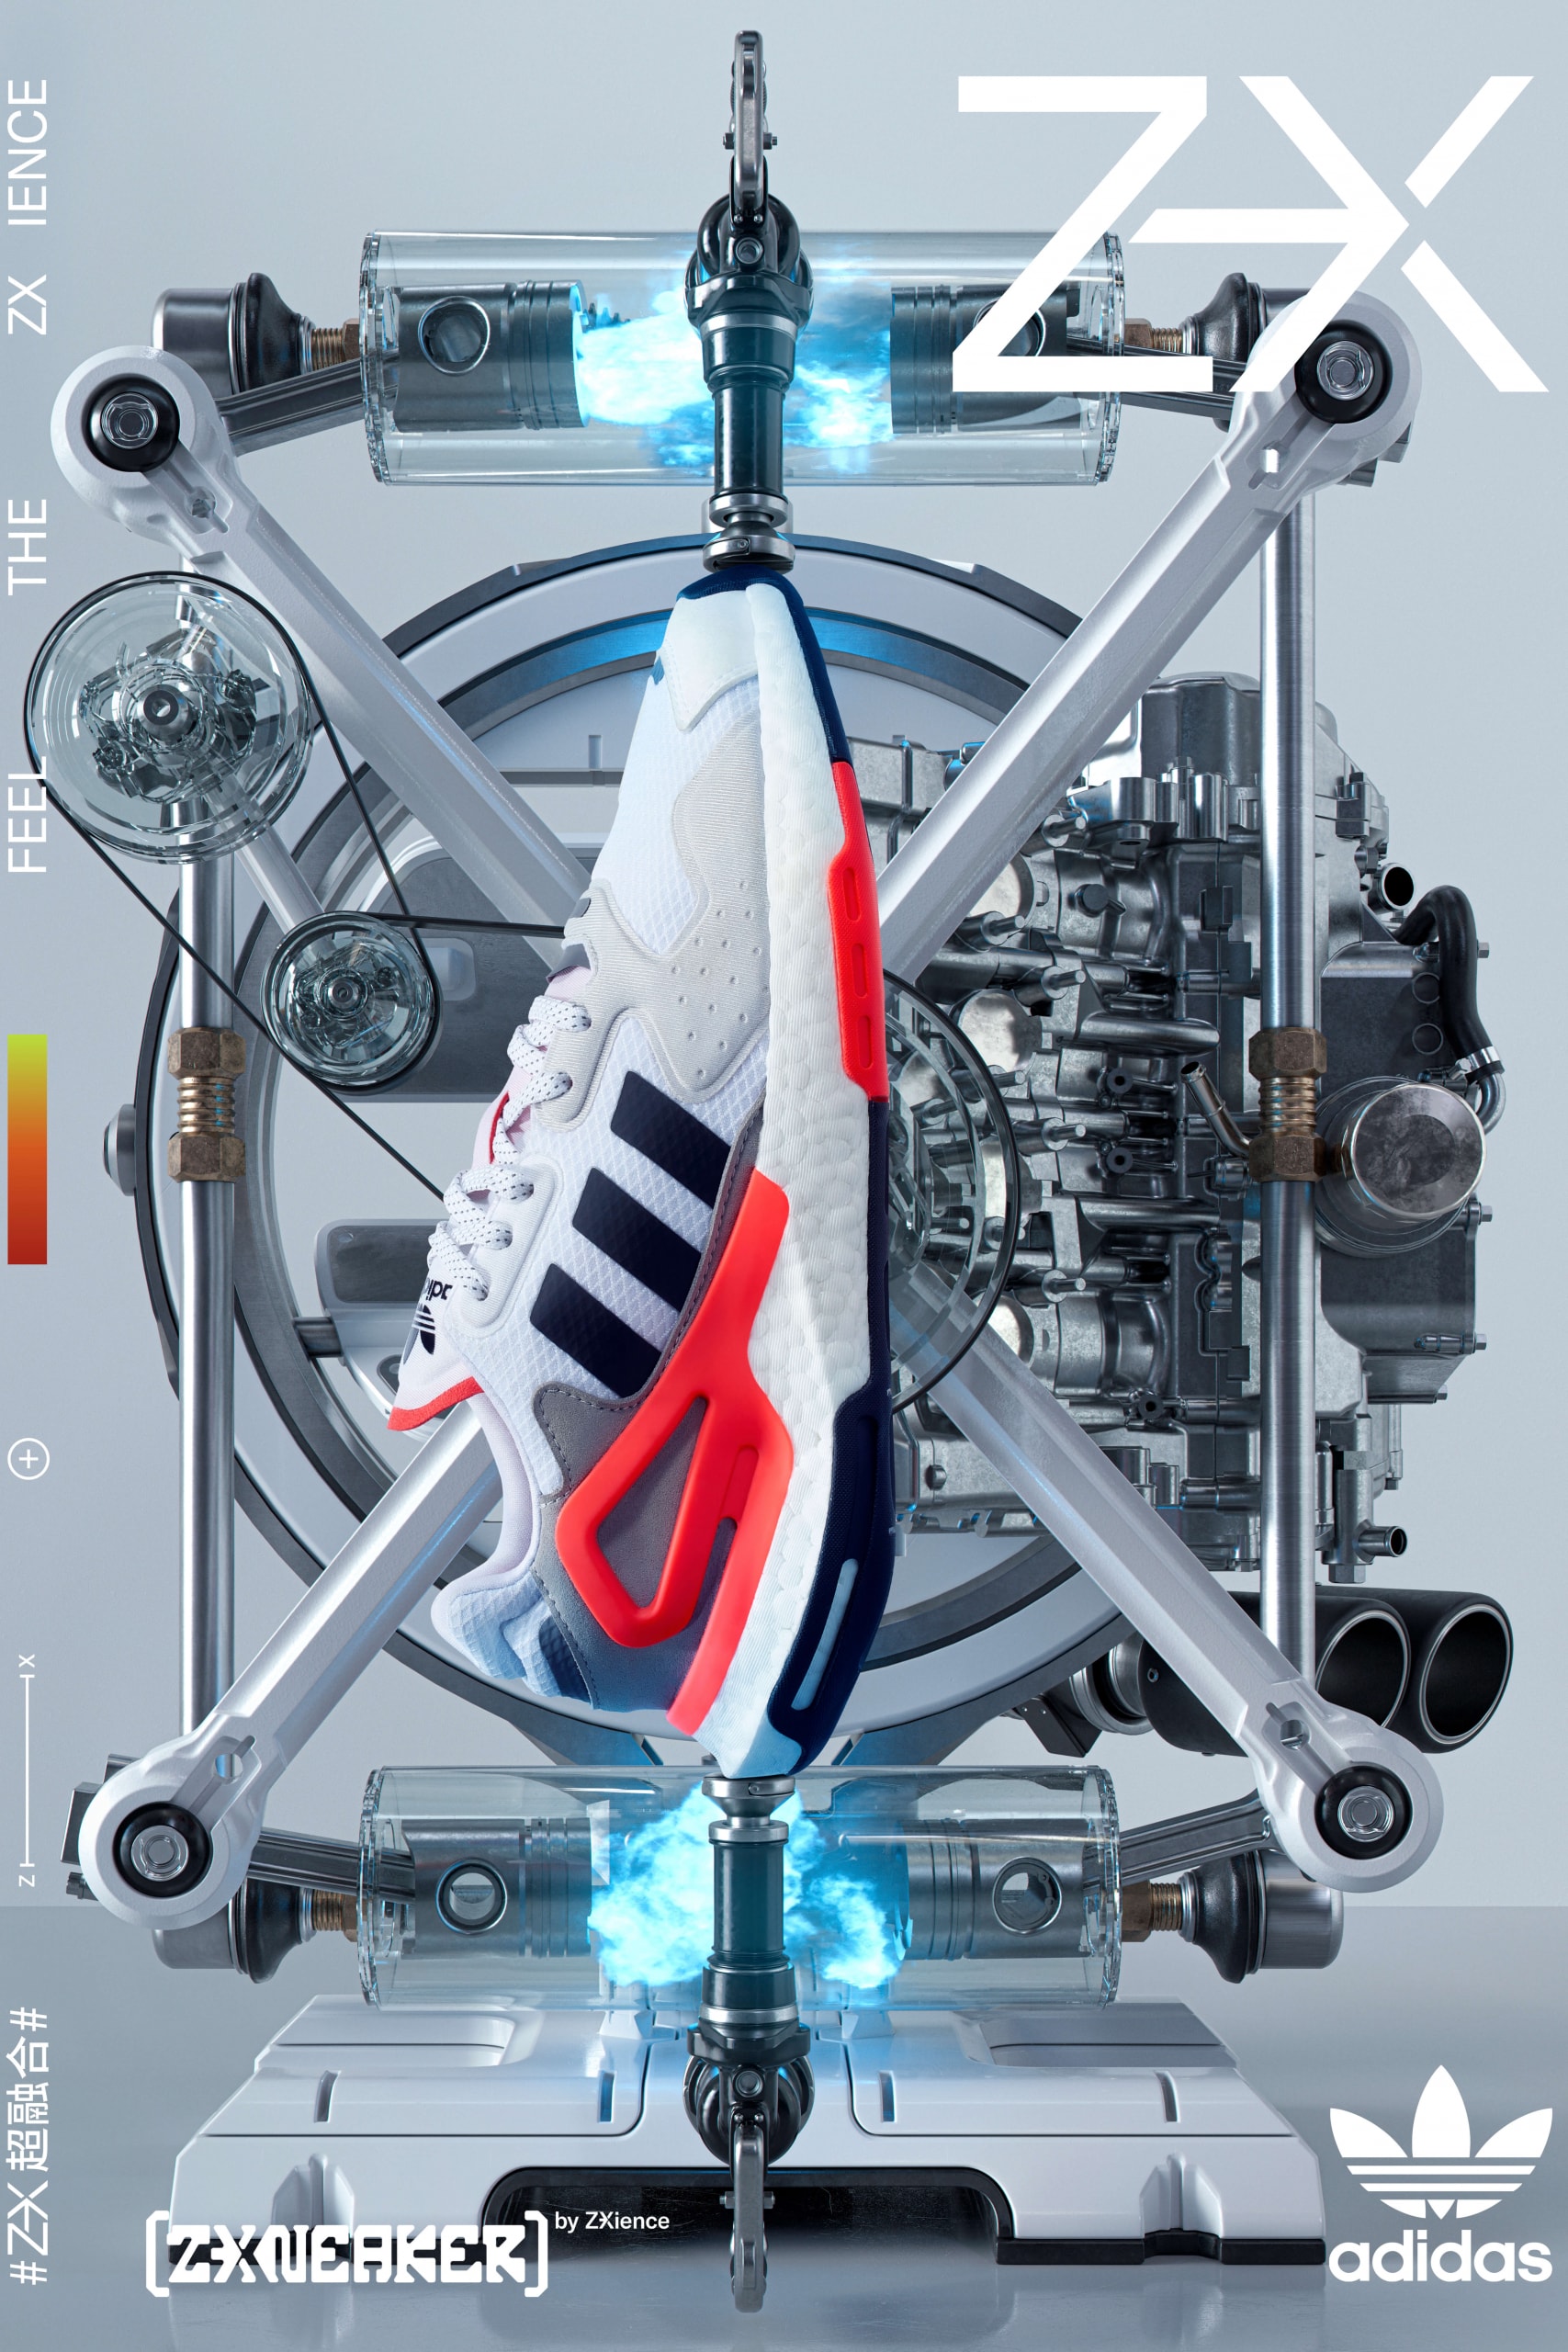 adidas ZX 系列搭载全新科技与外观登场